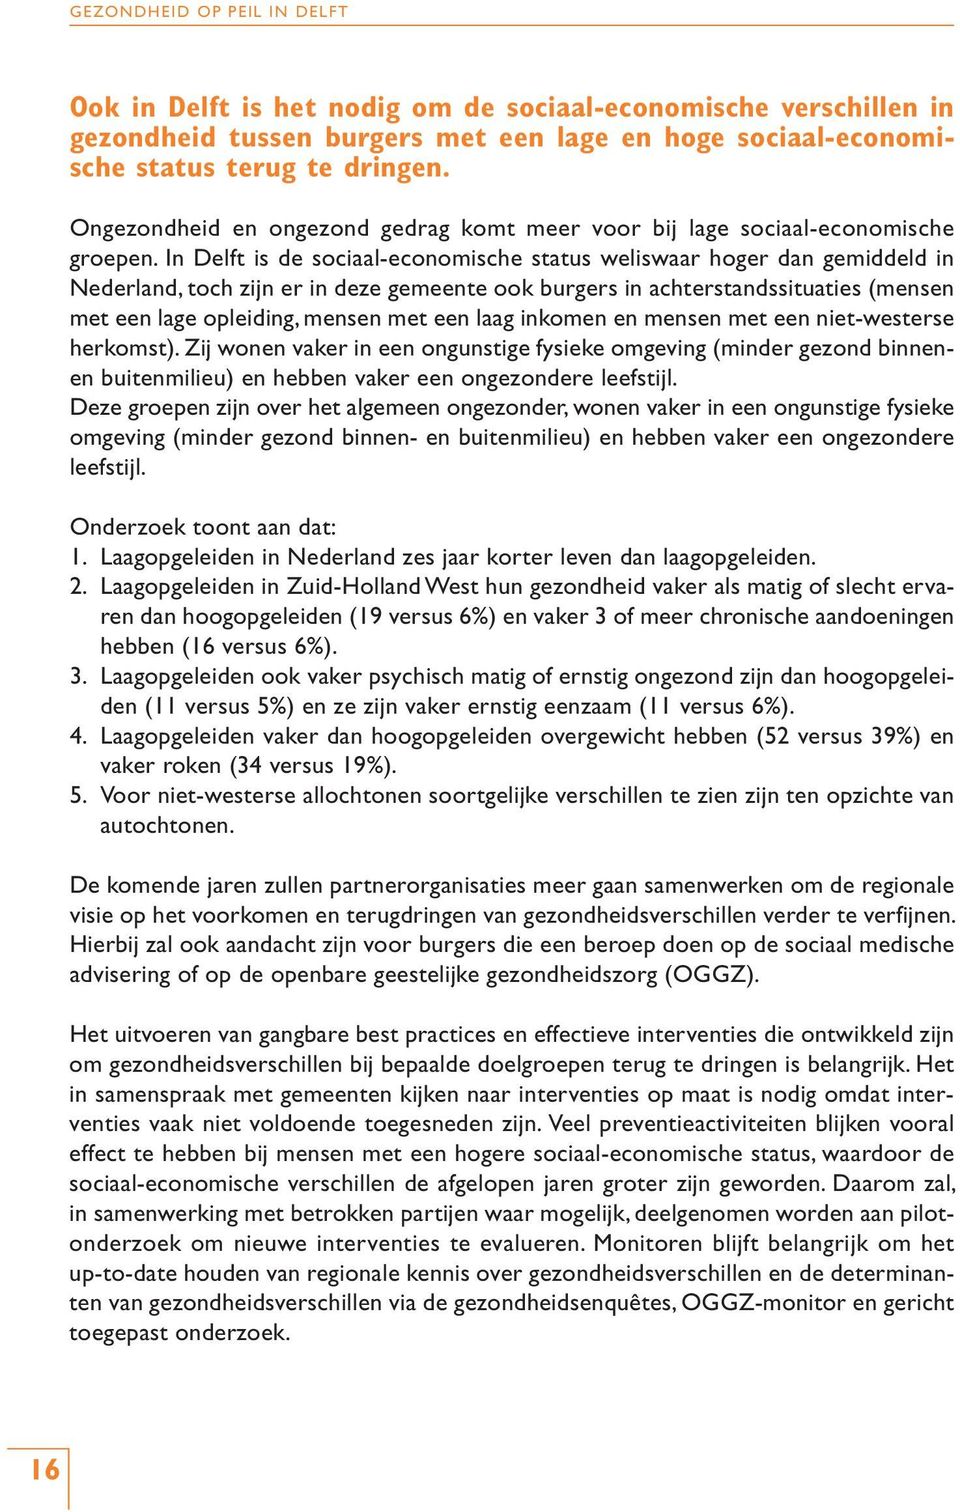 In Delft is de sociaal-economische status weliswaar hoger dan gemiddeld in Nederland, toch zijn er in deze gemeente ook burgers in achterstandssituaties (mensen met een lage opleiding, mensen met een